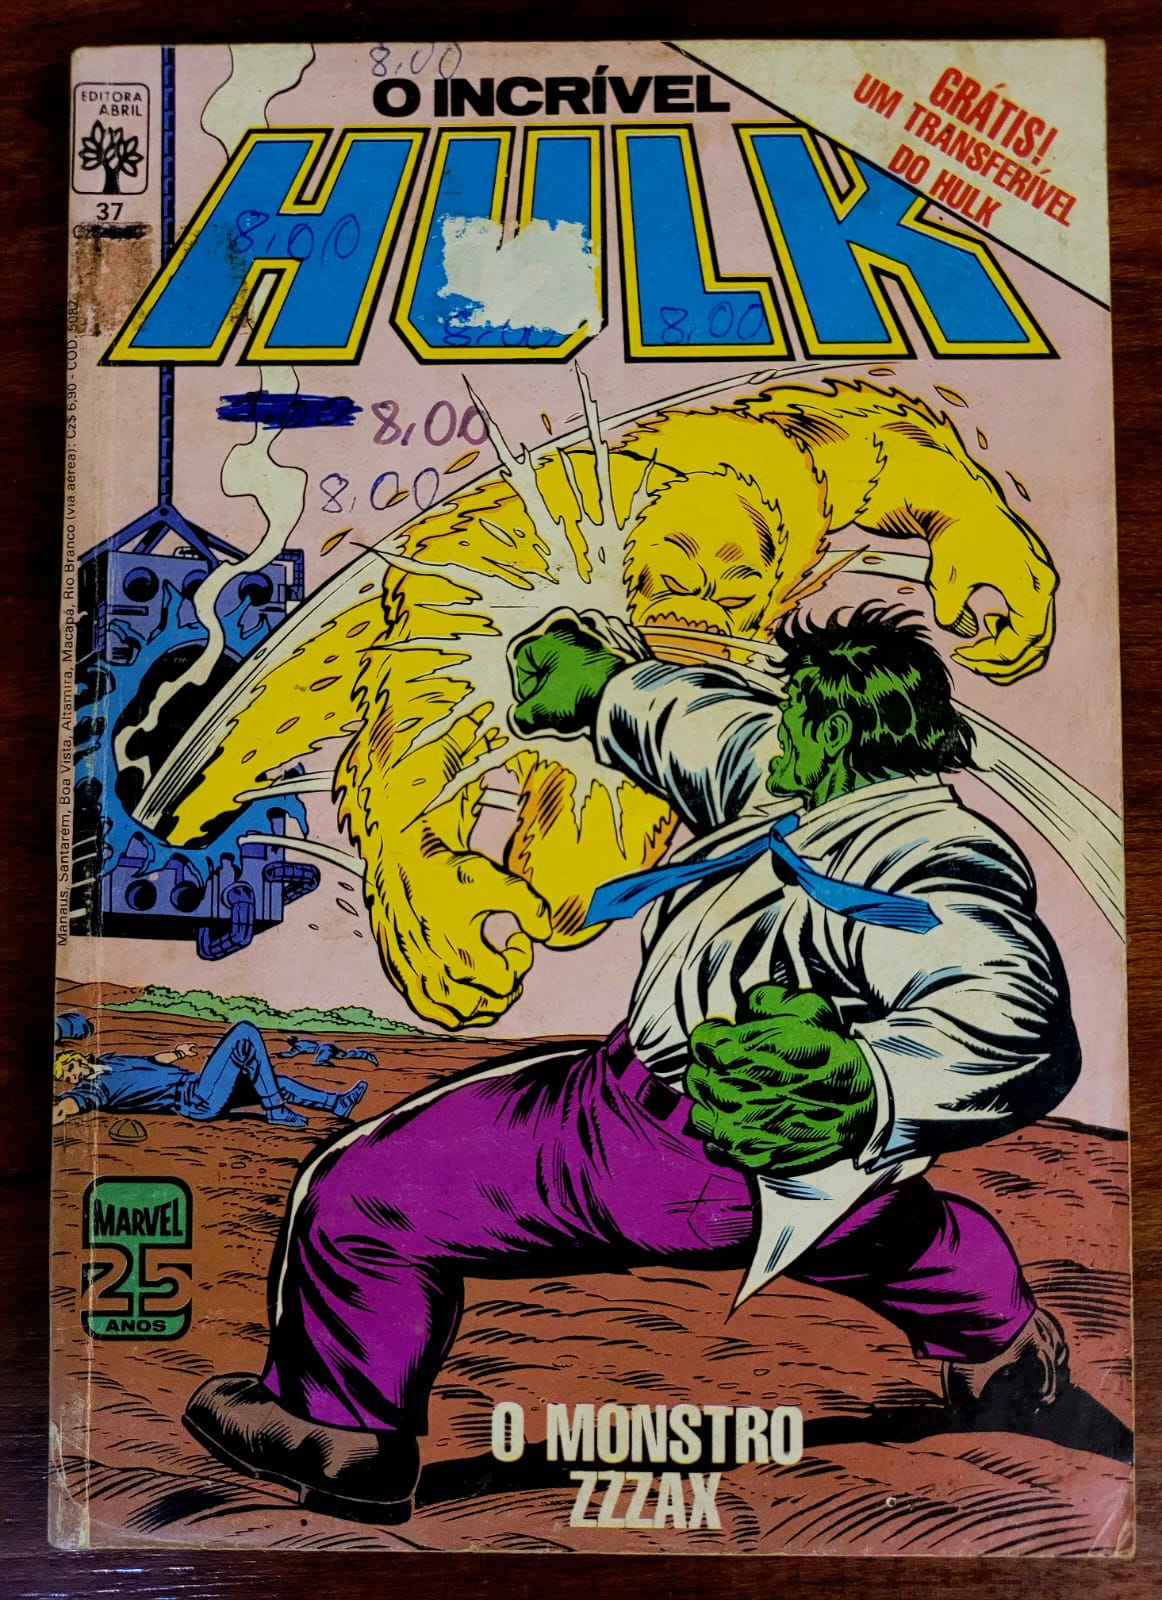 O Incrivel Hulk 37 a Casa do Colecionador